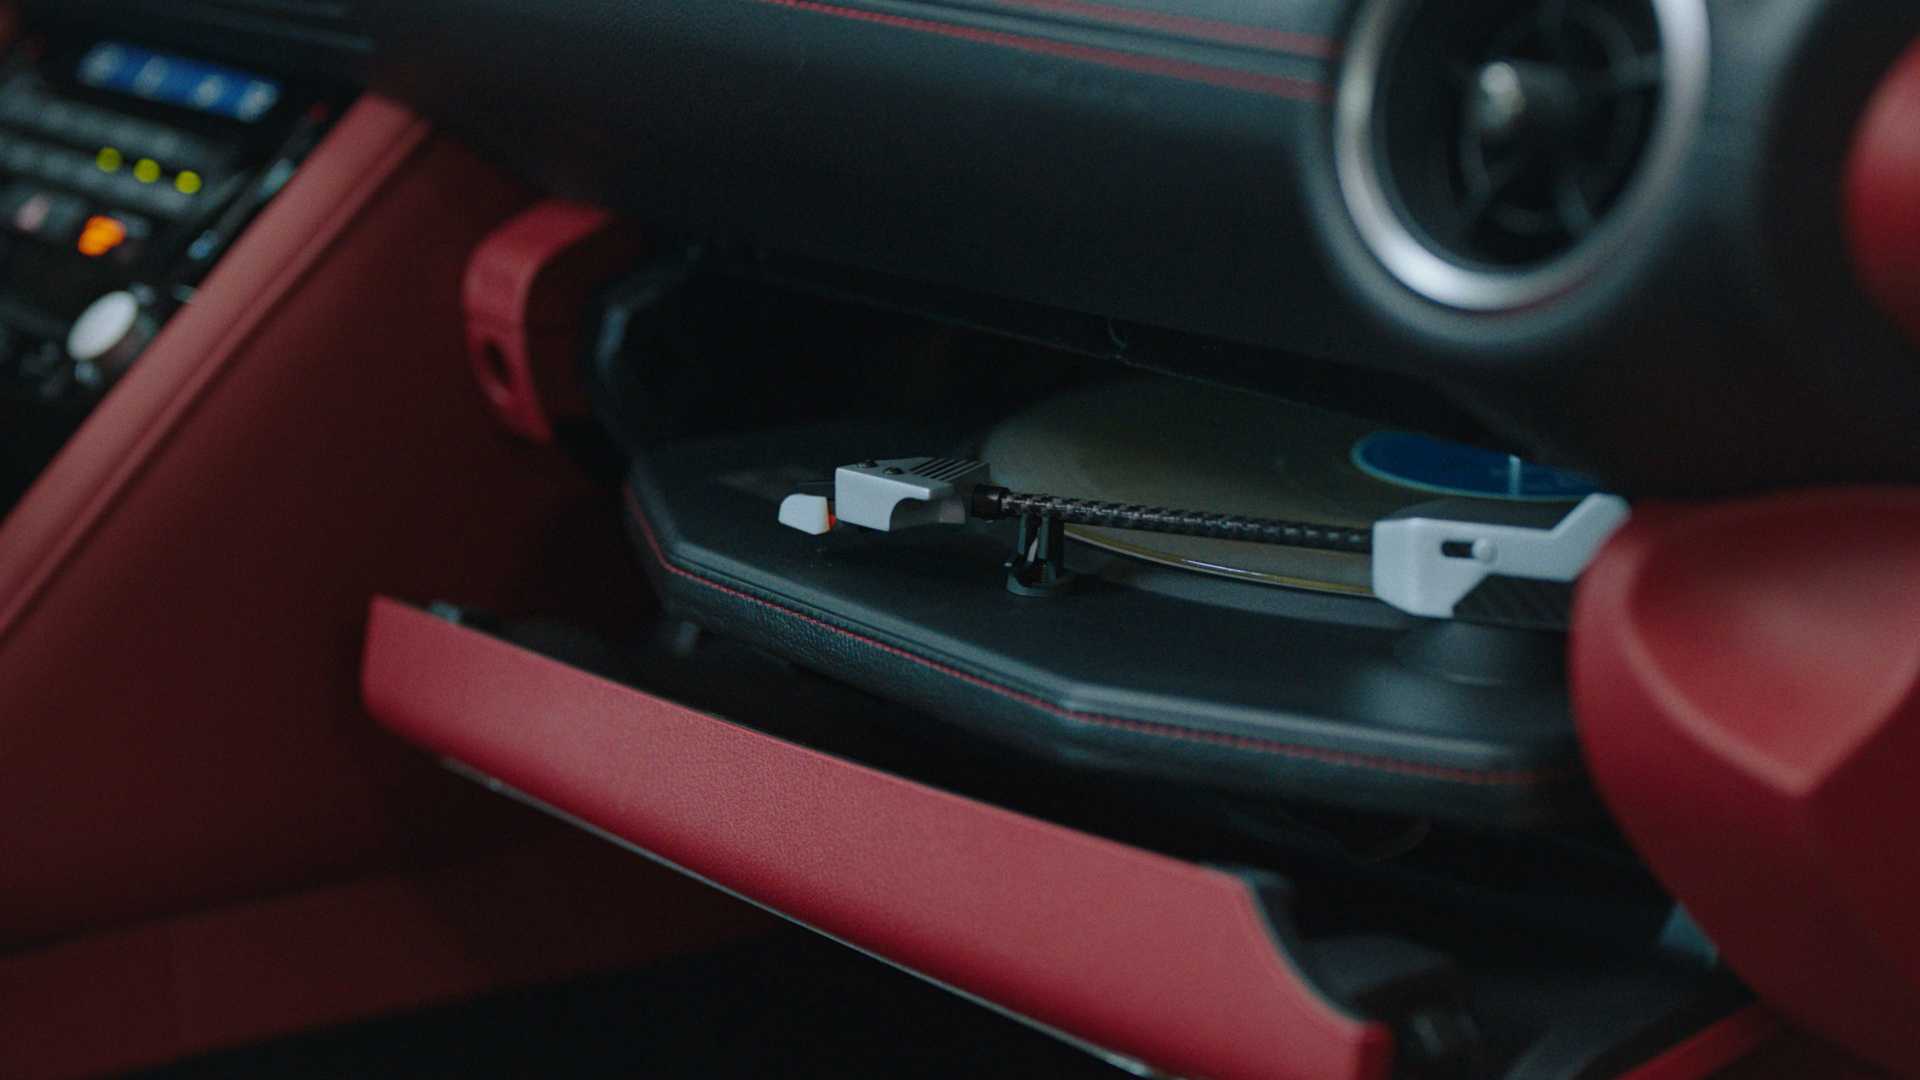 Lexus prekvapenie: Zvuk vďaka gramofónu z 3D tlačiarne!